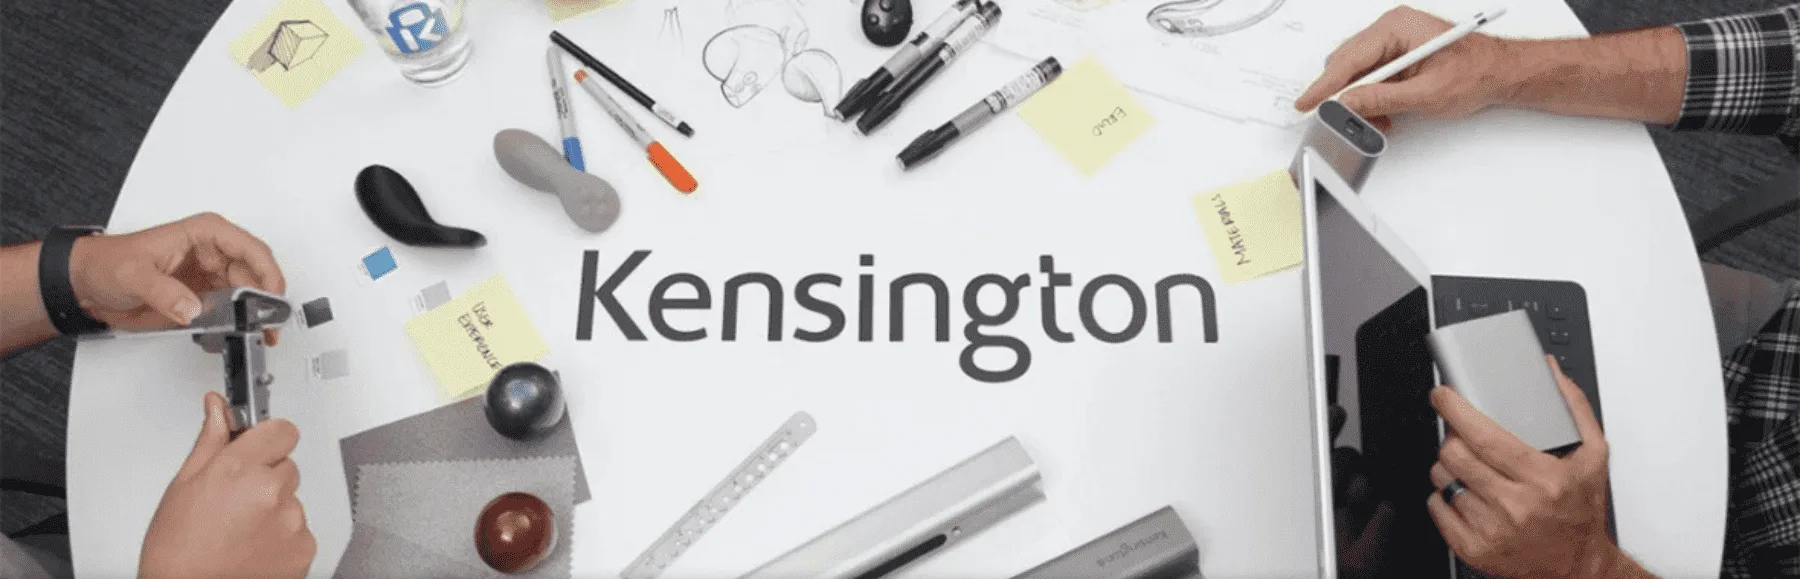 Productos Kensington